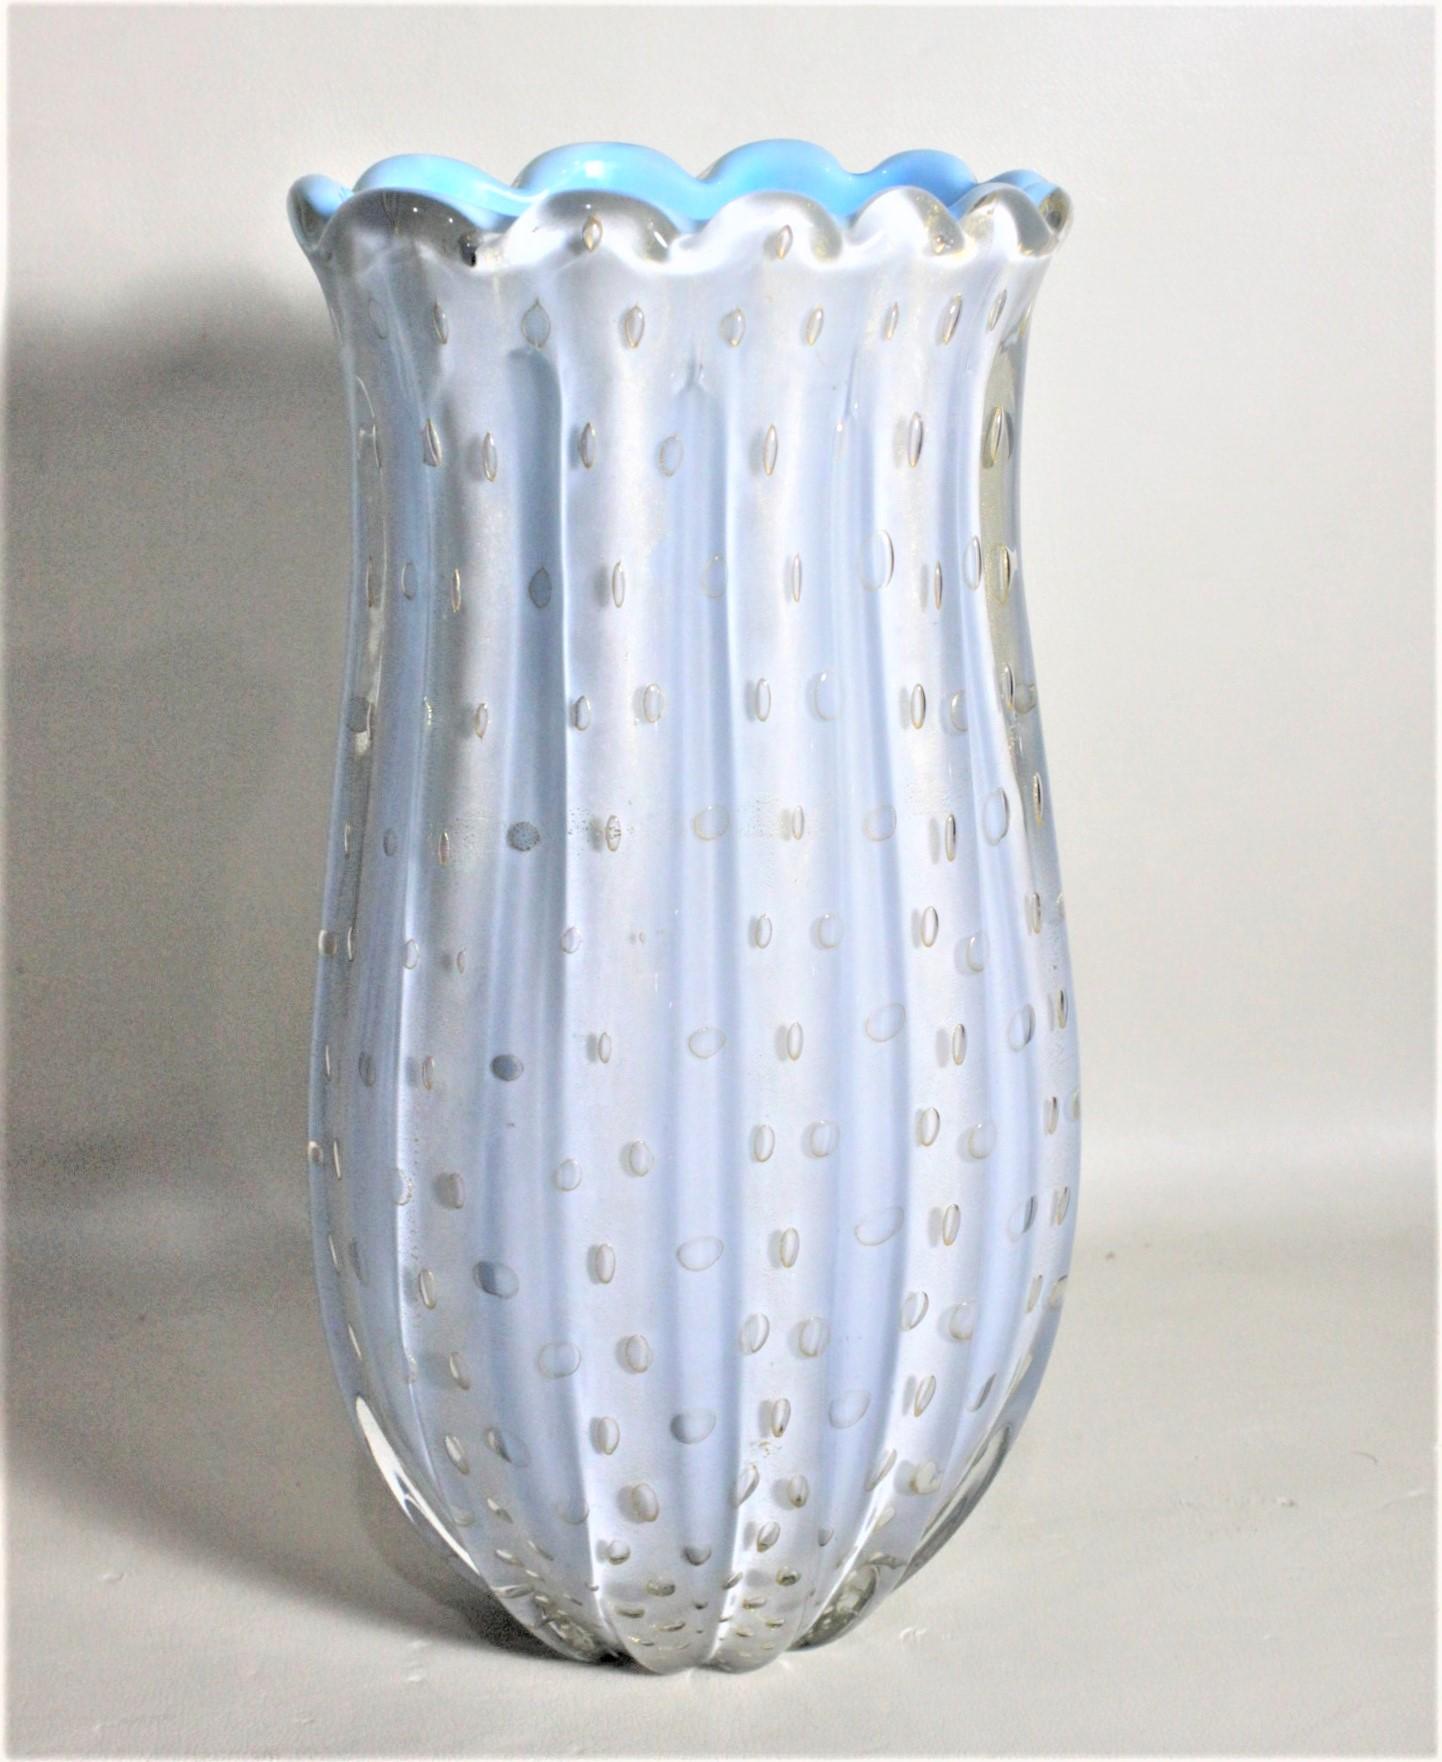 Diese Vase aus Muranoglas ist unsigniert, wurde aber höchstwahrscheinlich von Angelo Barovier aus Italien um 1969 im Stil der Jahrhundertmitte hergestellt. Die Vase ist ein überfangenes weißes über türkisfarbenem Glas mit Riffelungen um den Rand und